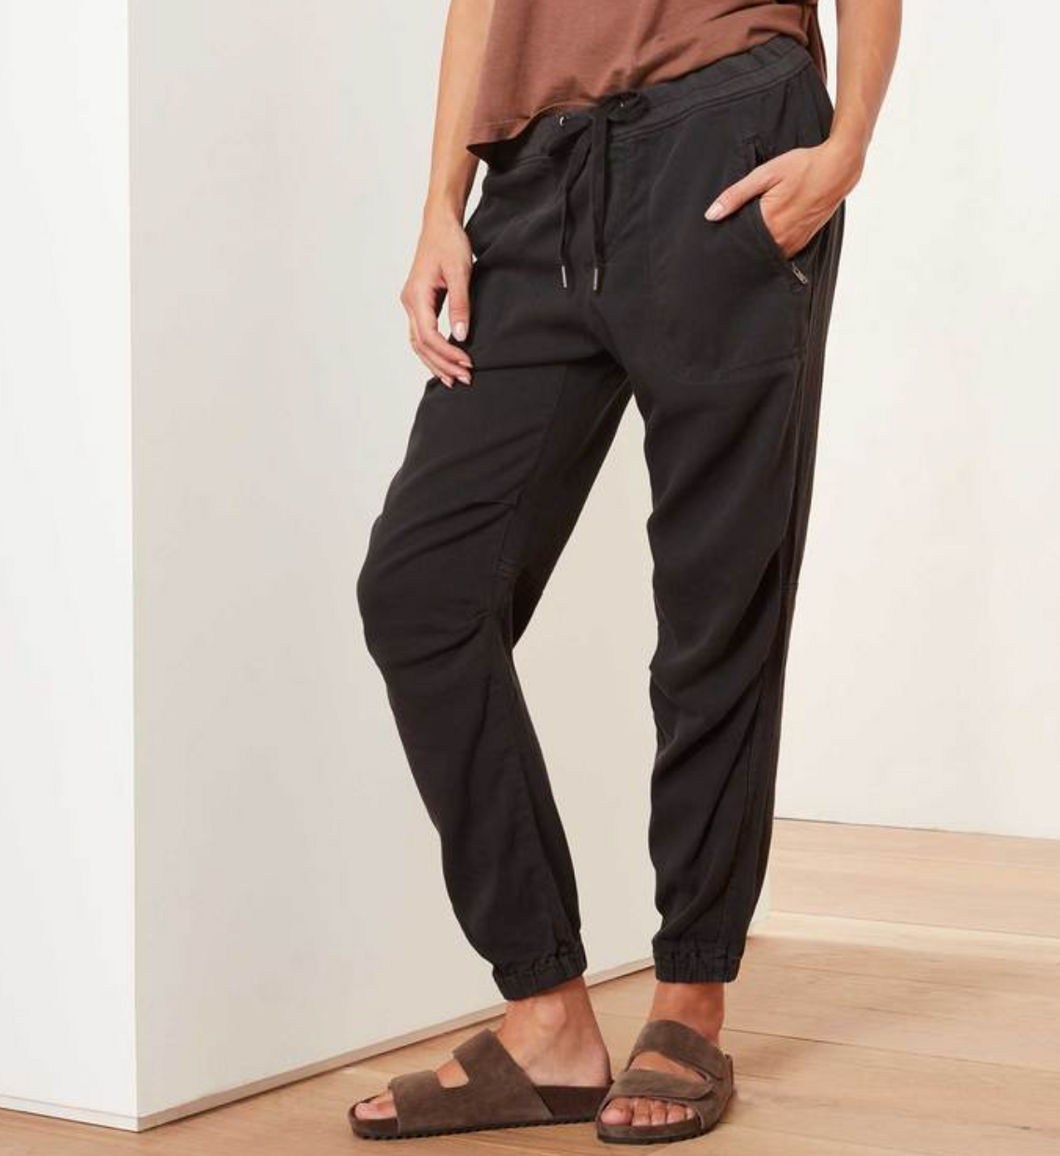 James Perse Soft Drape Utility Pant Oskar’s Boutique Women's Tops